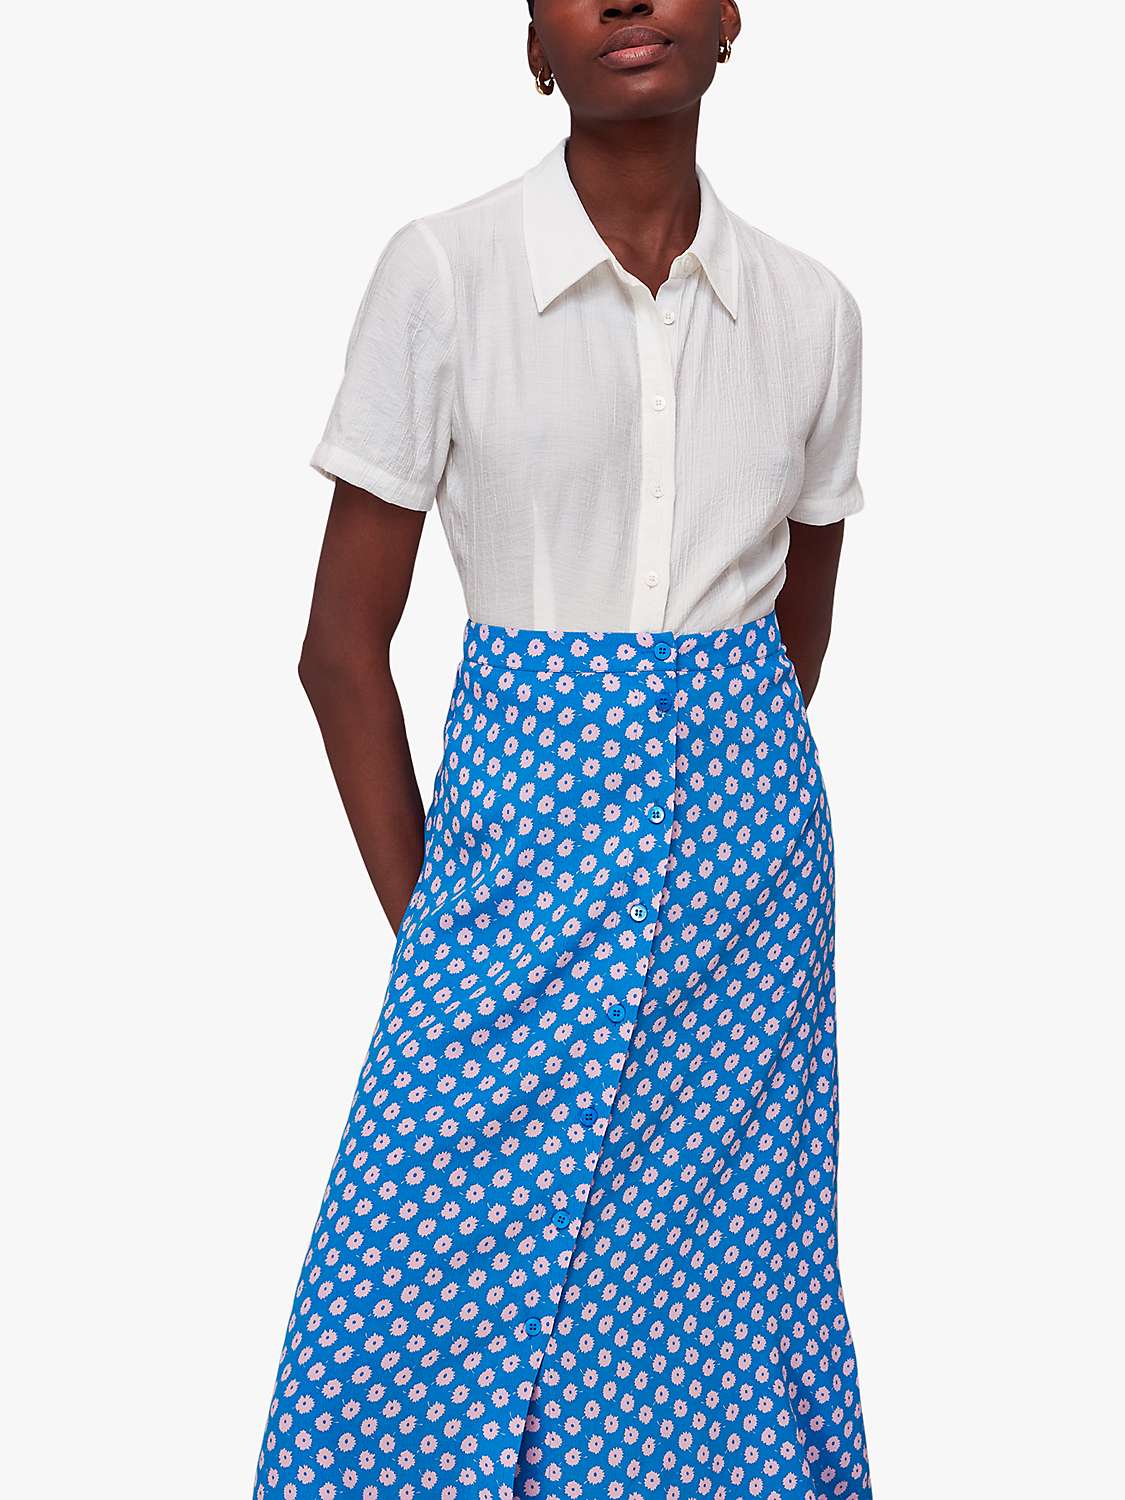 Buy Whistles Floral Sunburst Midi Skirt, Blue/Multi Online at johnlewis.com